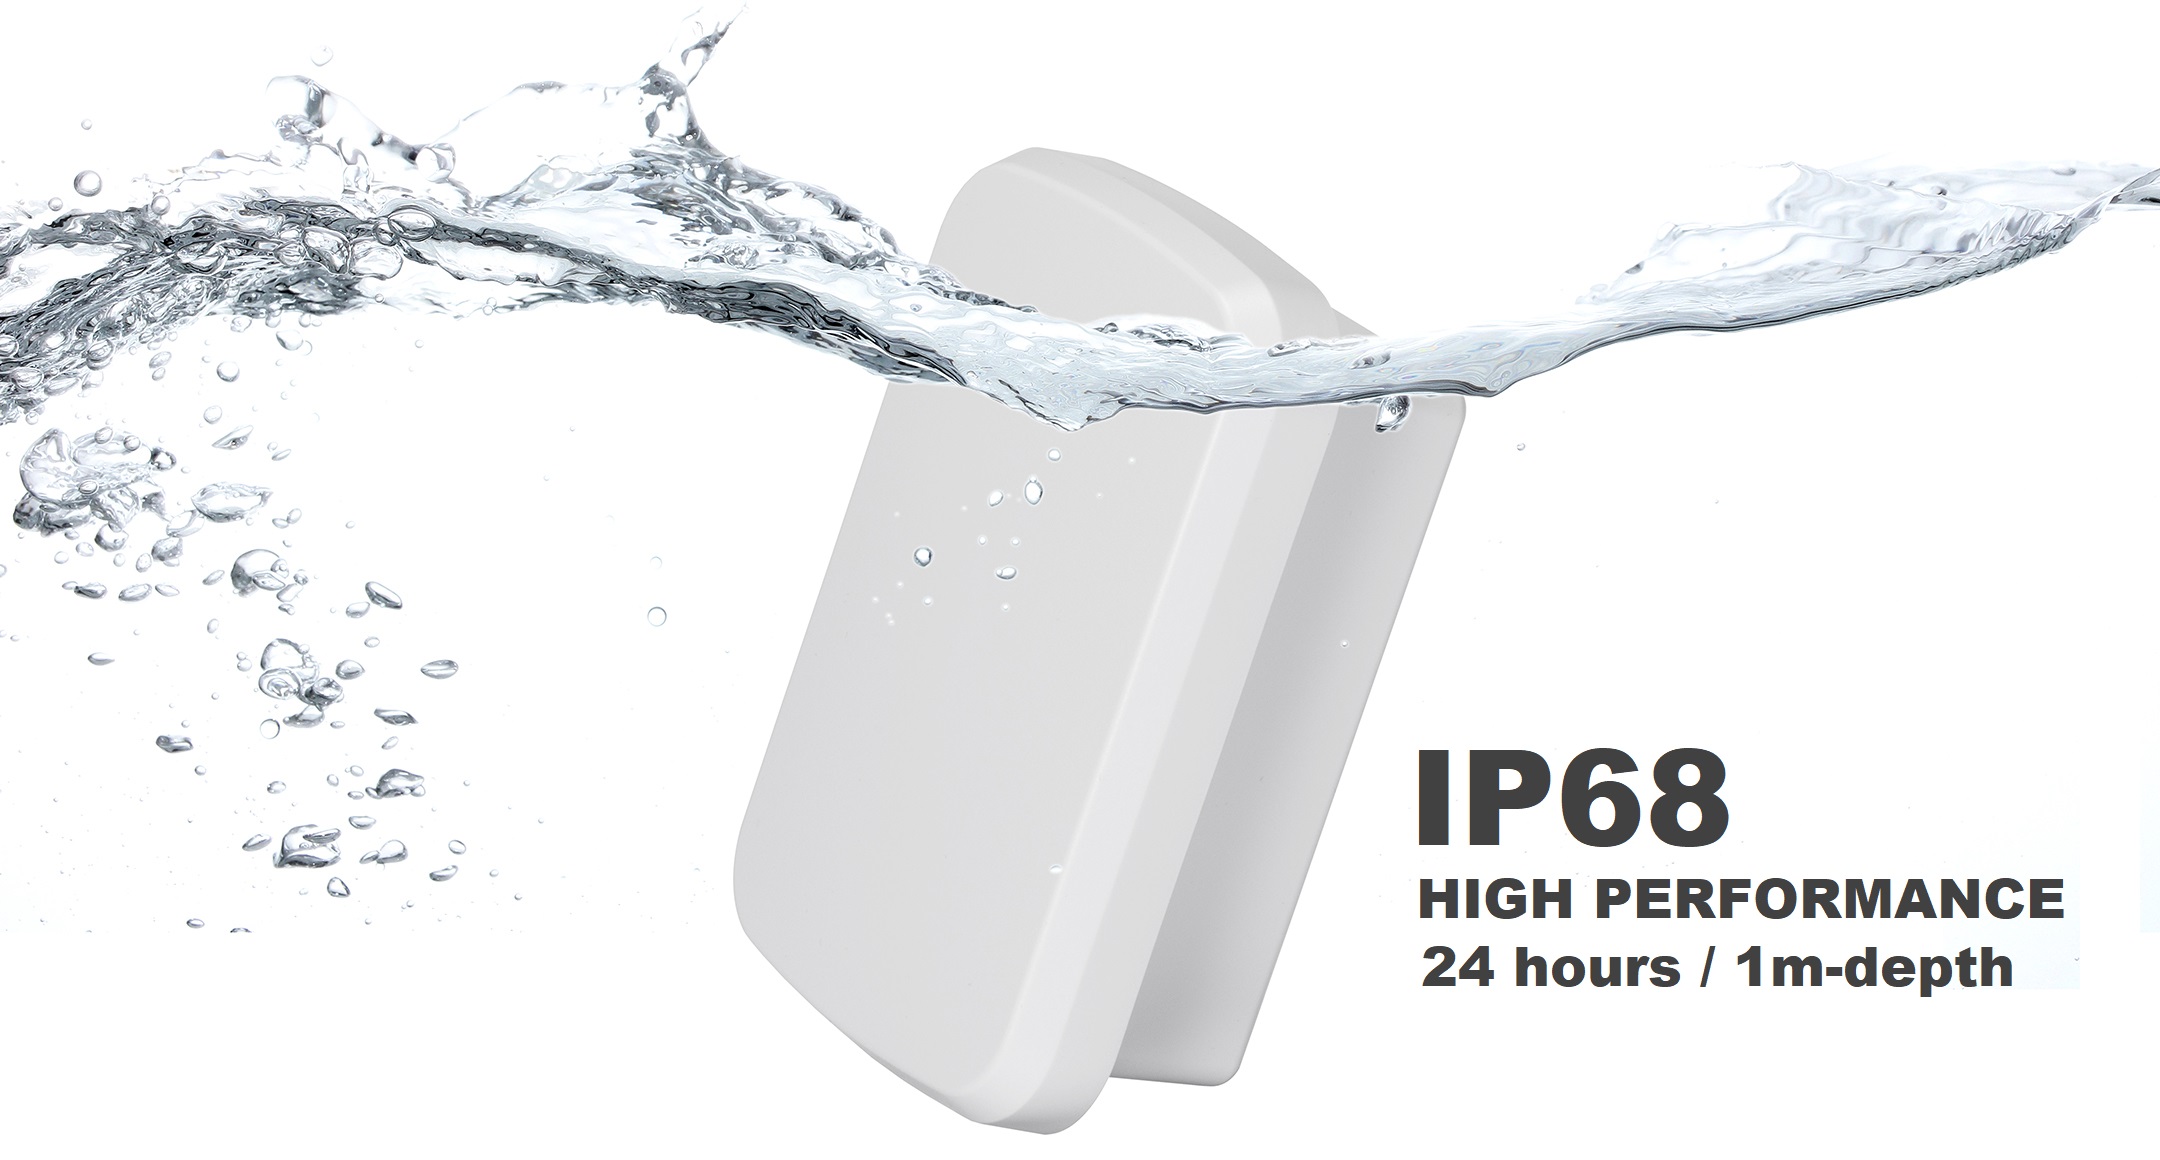 IP68 HIGH PERFORMANCE WATERPROOF ENCLOSURE WG series